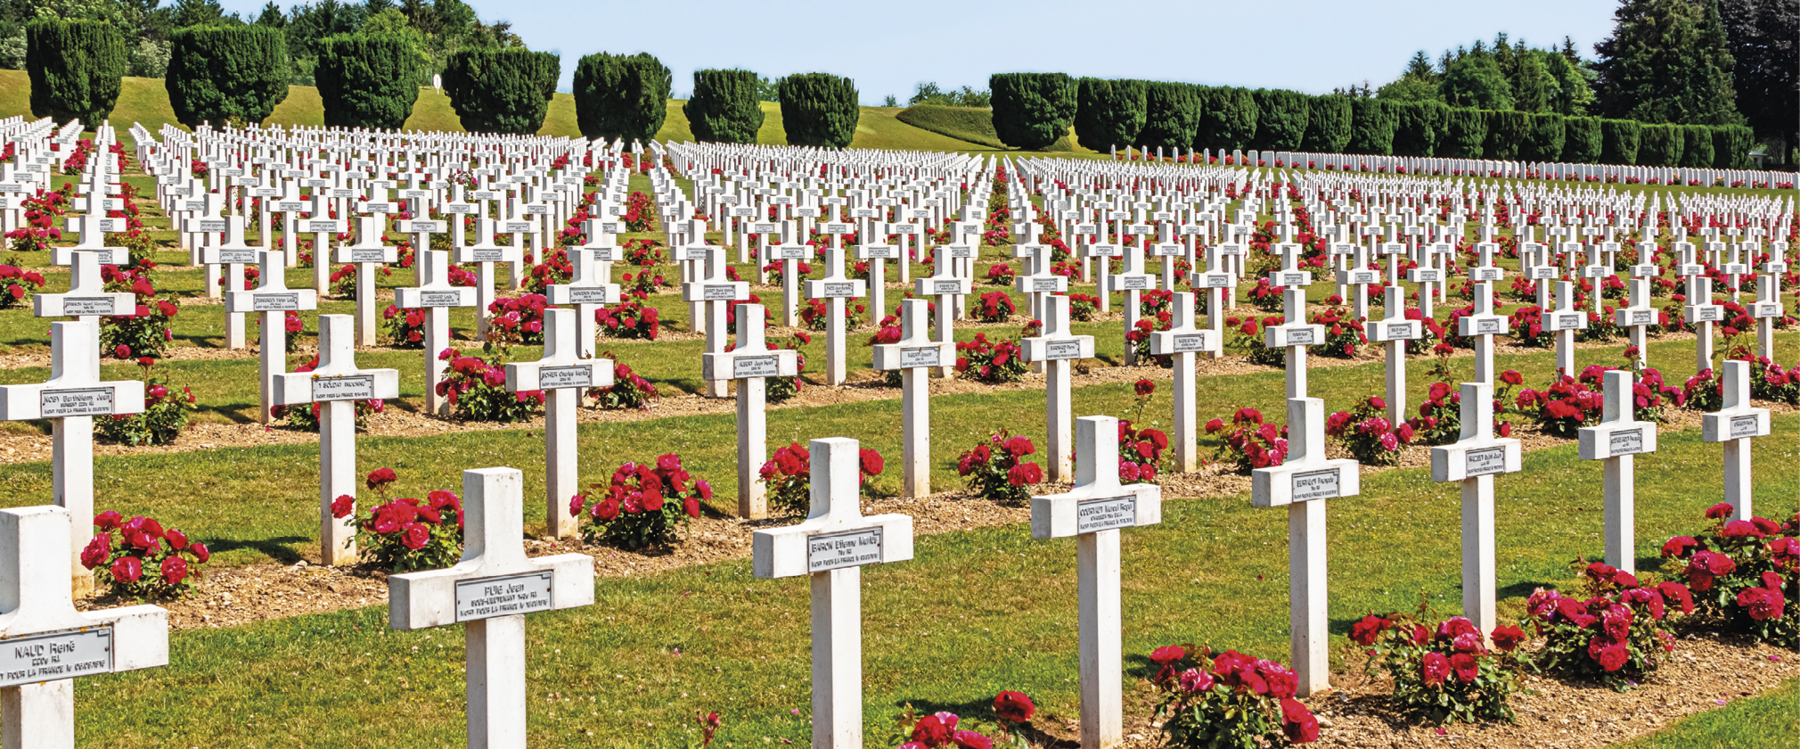 Fotografia. Cemitério em uma área plana e verde. Cada túmulo tem uma cruz branca e flores vermelhas. Ao fundo, algumas árvores.